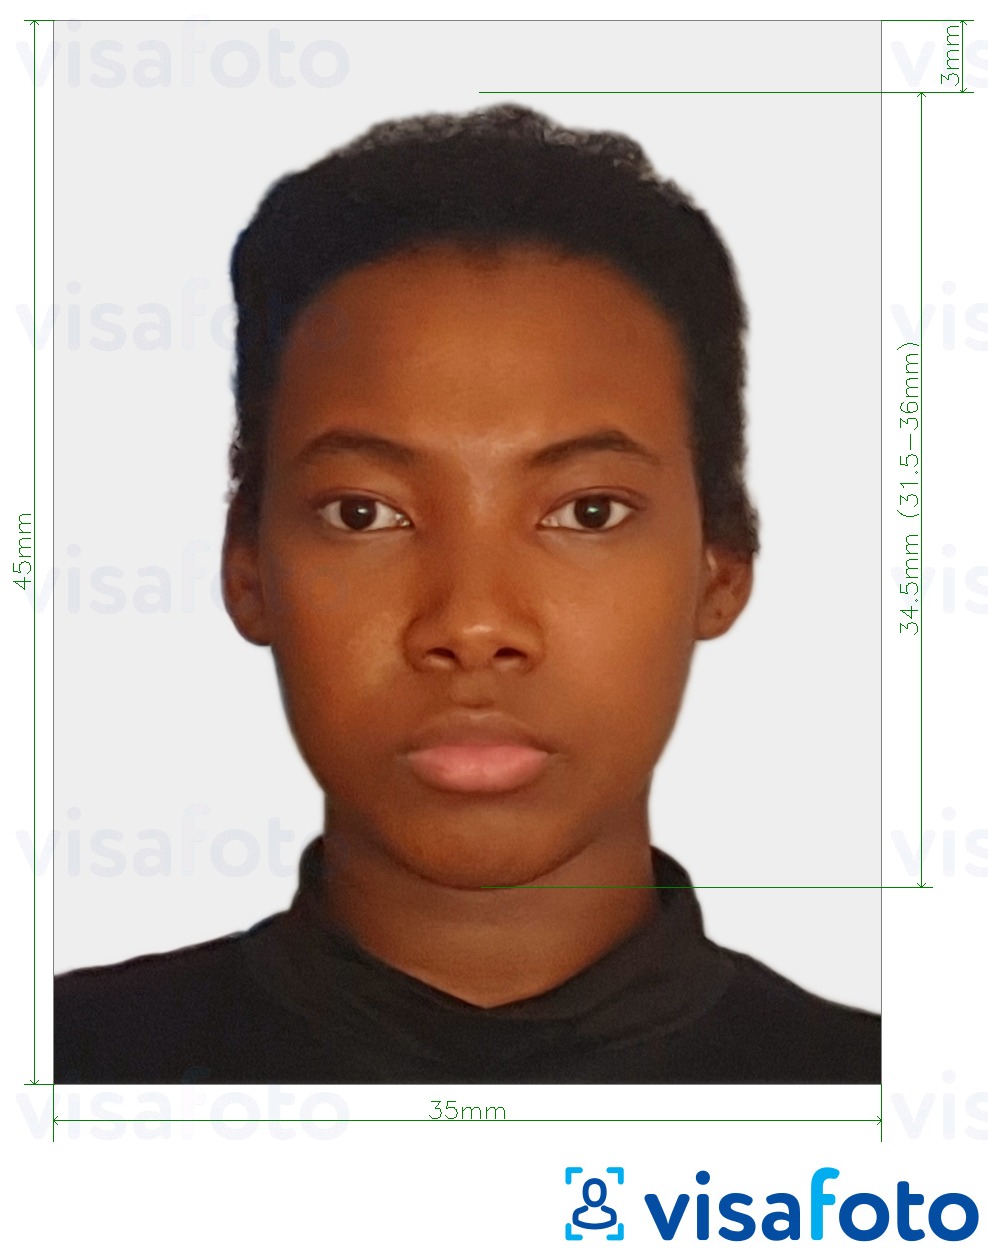 Voorbeeld van foto voor Surinaams paspoort 45x35 mm (1,77x1,37 inch) met exacte maatspecificatie